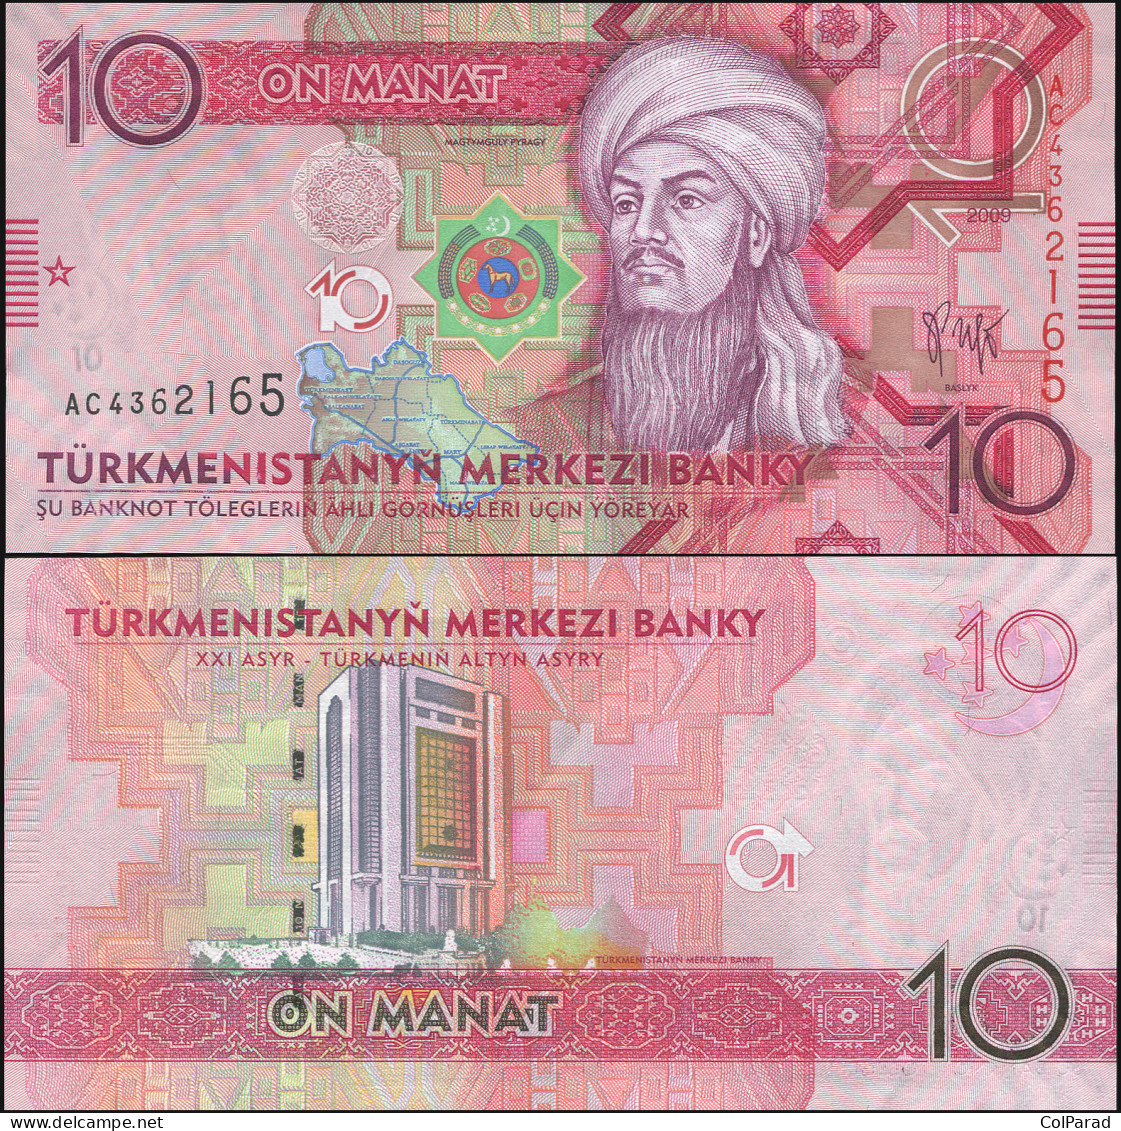 TURKMENISTAN 10 MANAT - 2009 - Unc - P.24a Paper Banknote - Turkmenistan